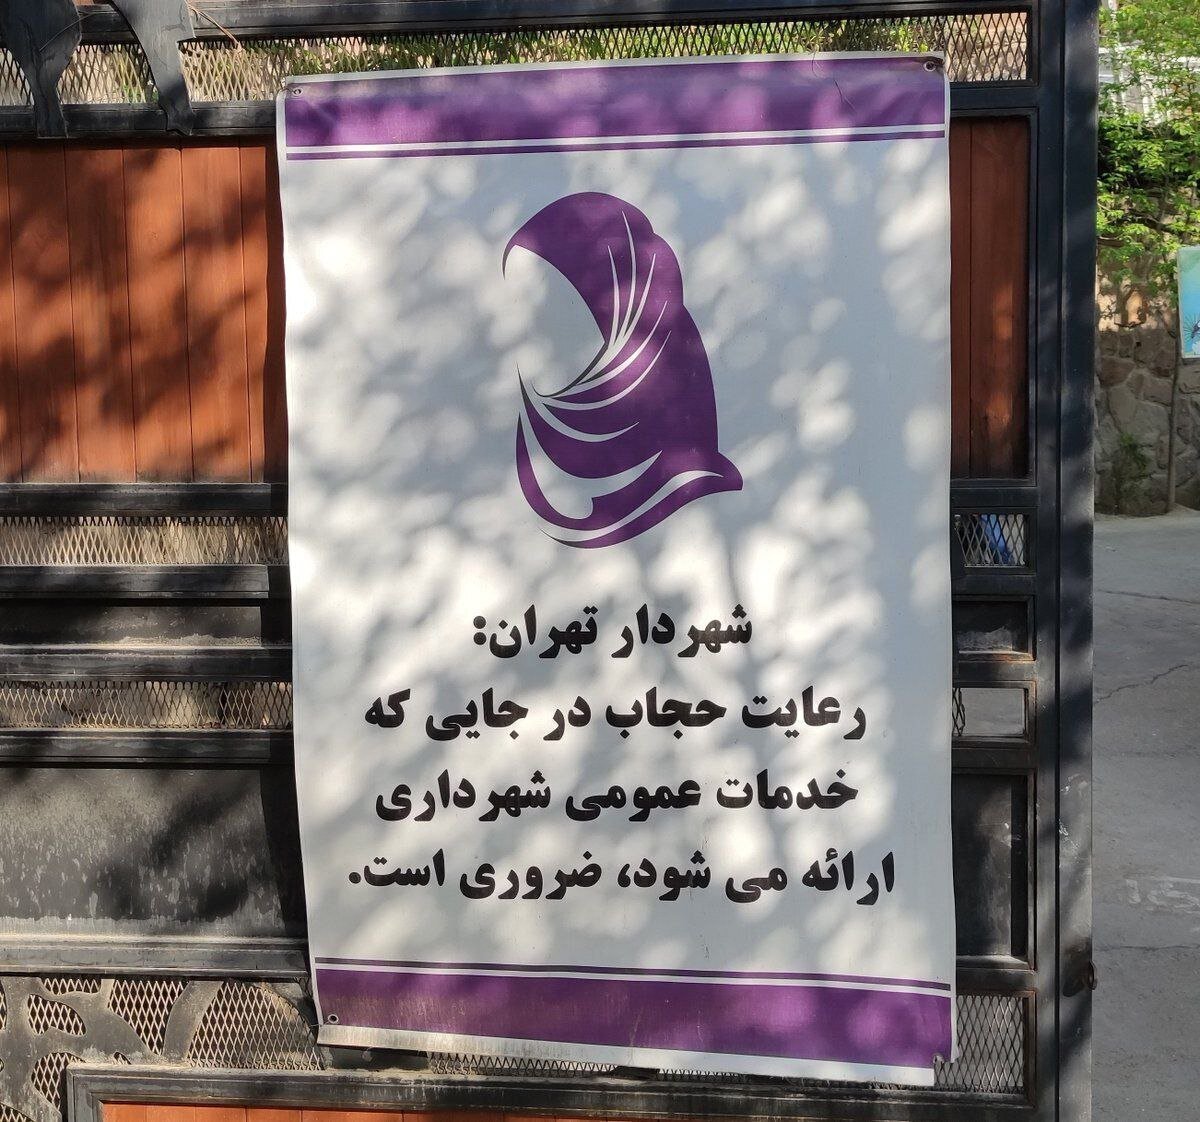 (تصویر) شاهکار جدید زاکانی؛ استفاده از جمله شخصی درباره حجاب در بنر شهرداری تهران!